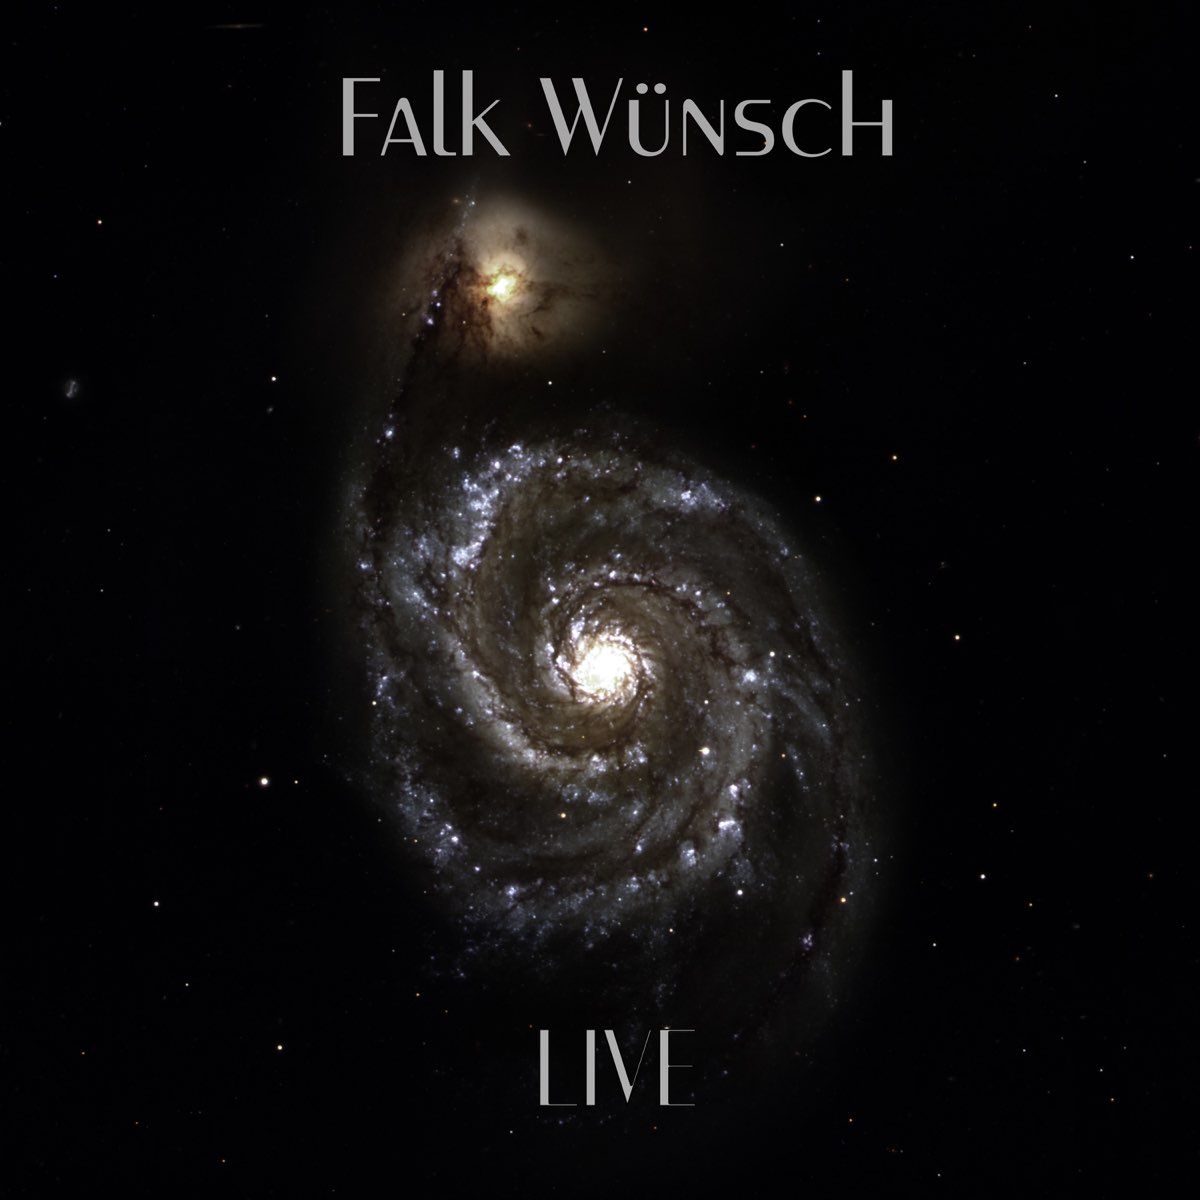 Live by Falk Wünsch on Apple Music